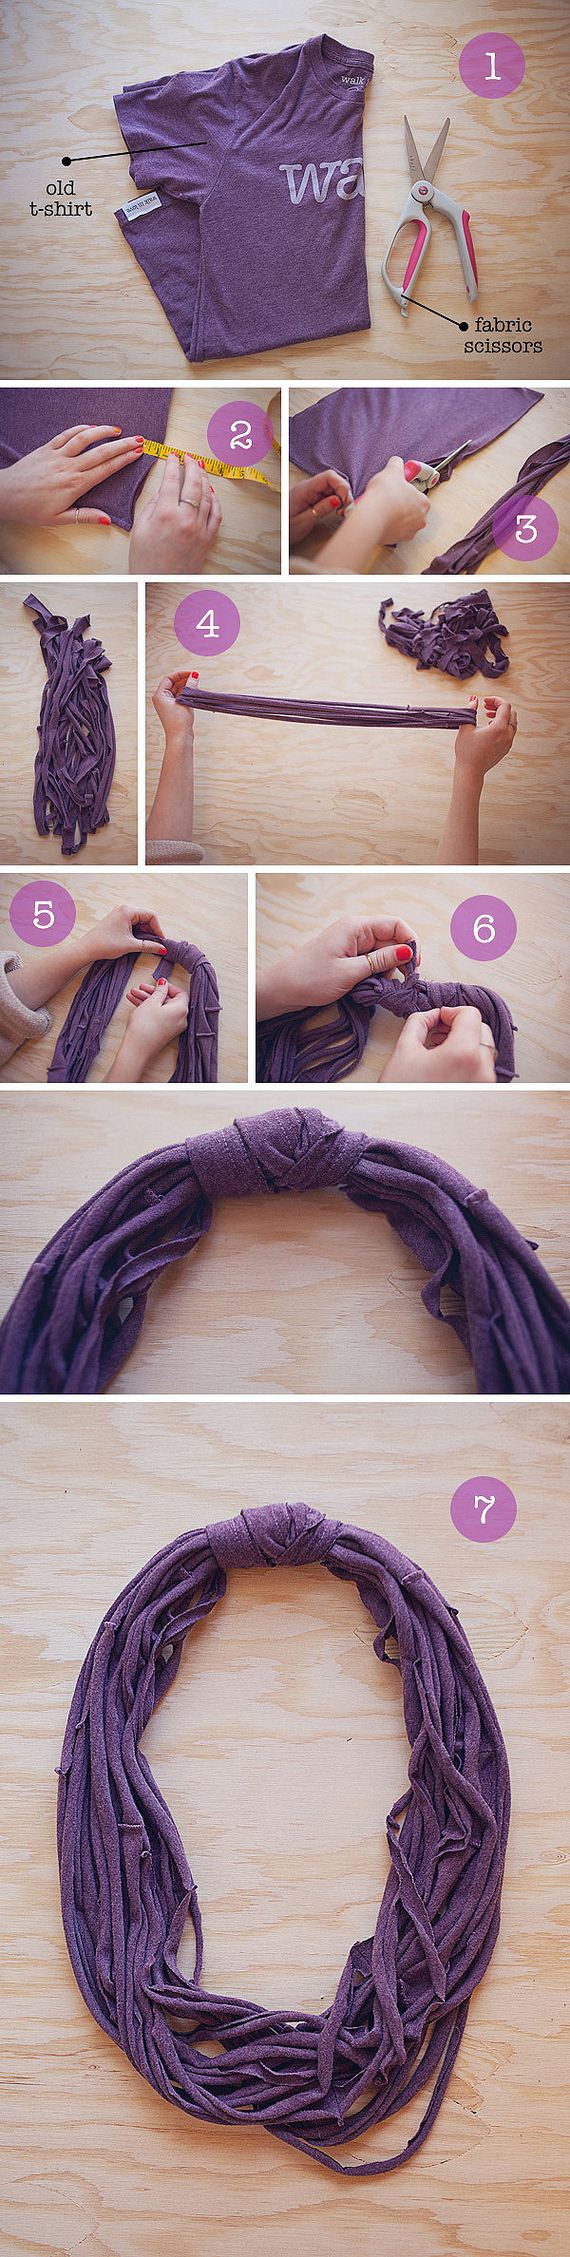 diy-scarves-easy-ideas-tutorials-reusing-old-things